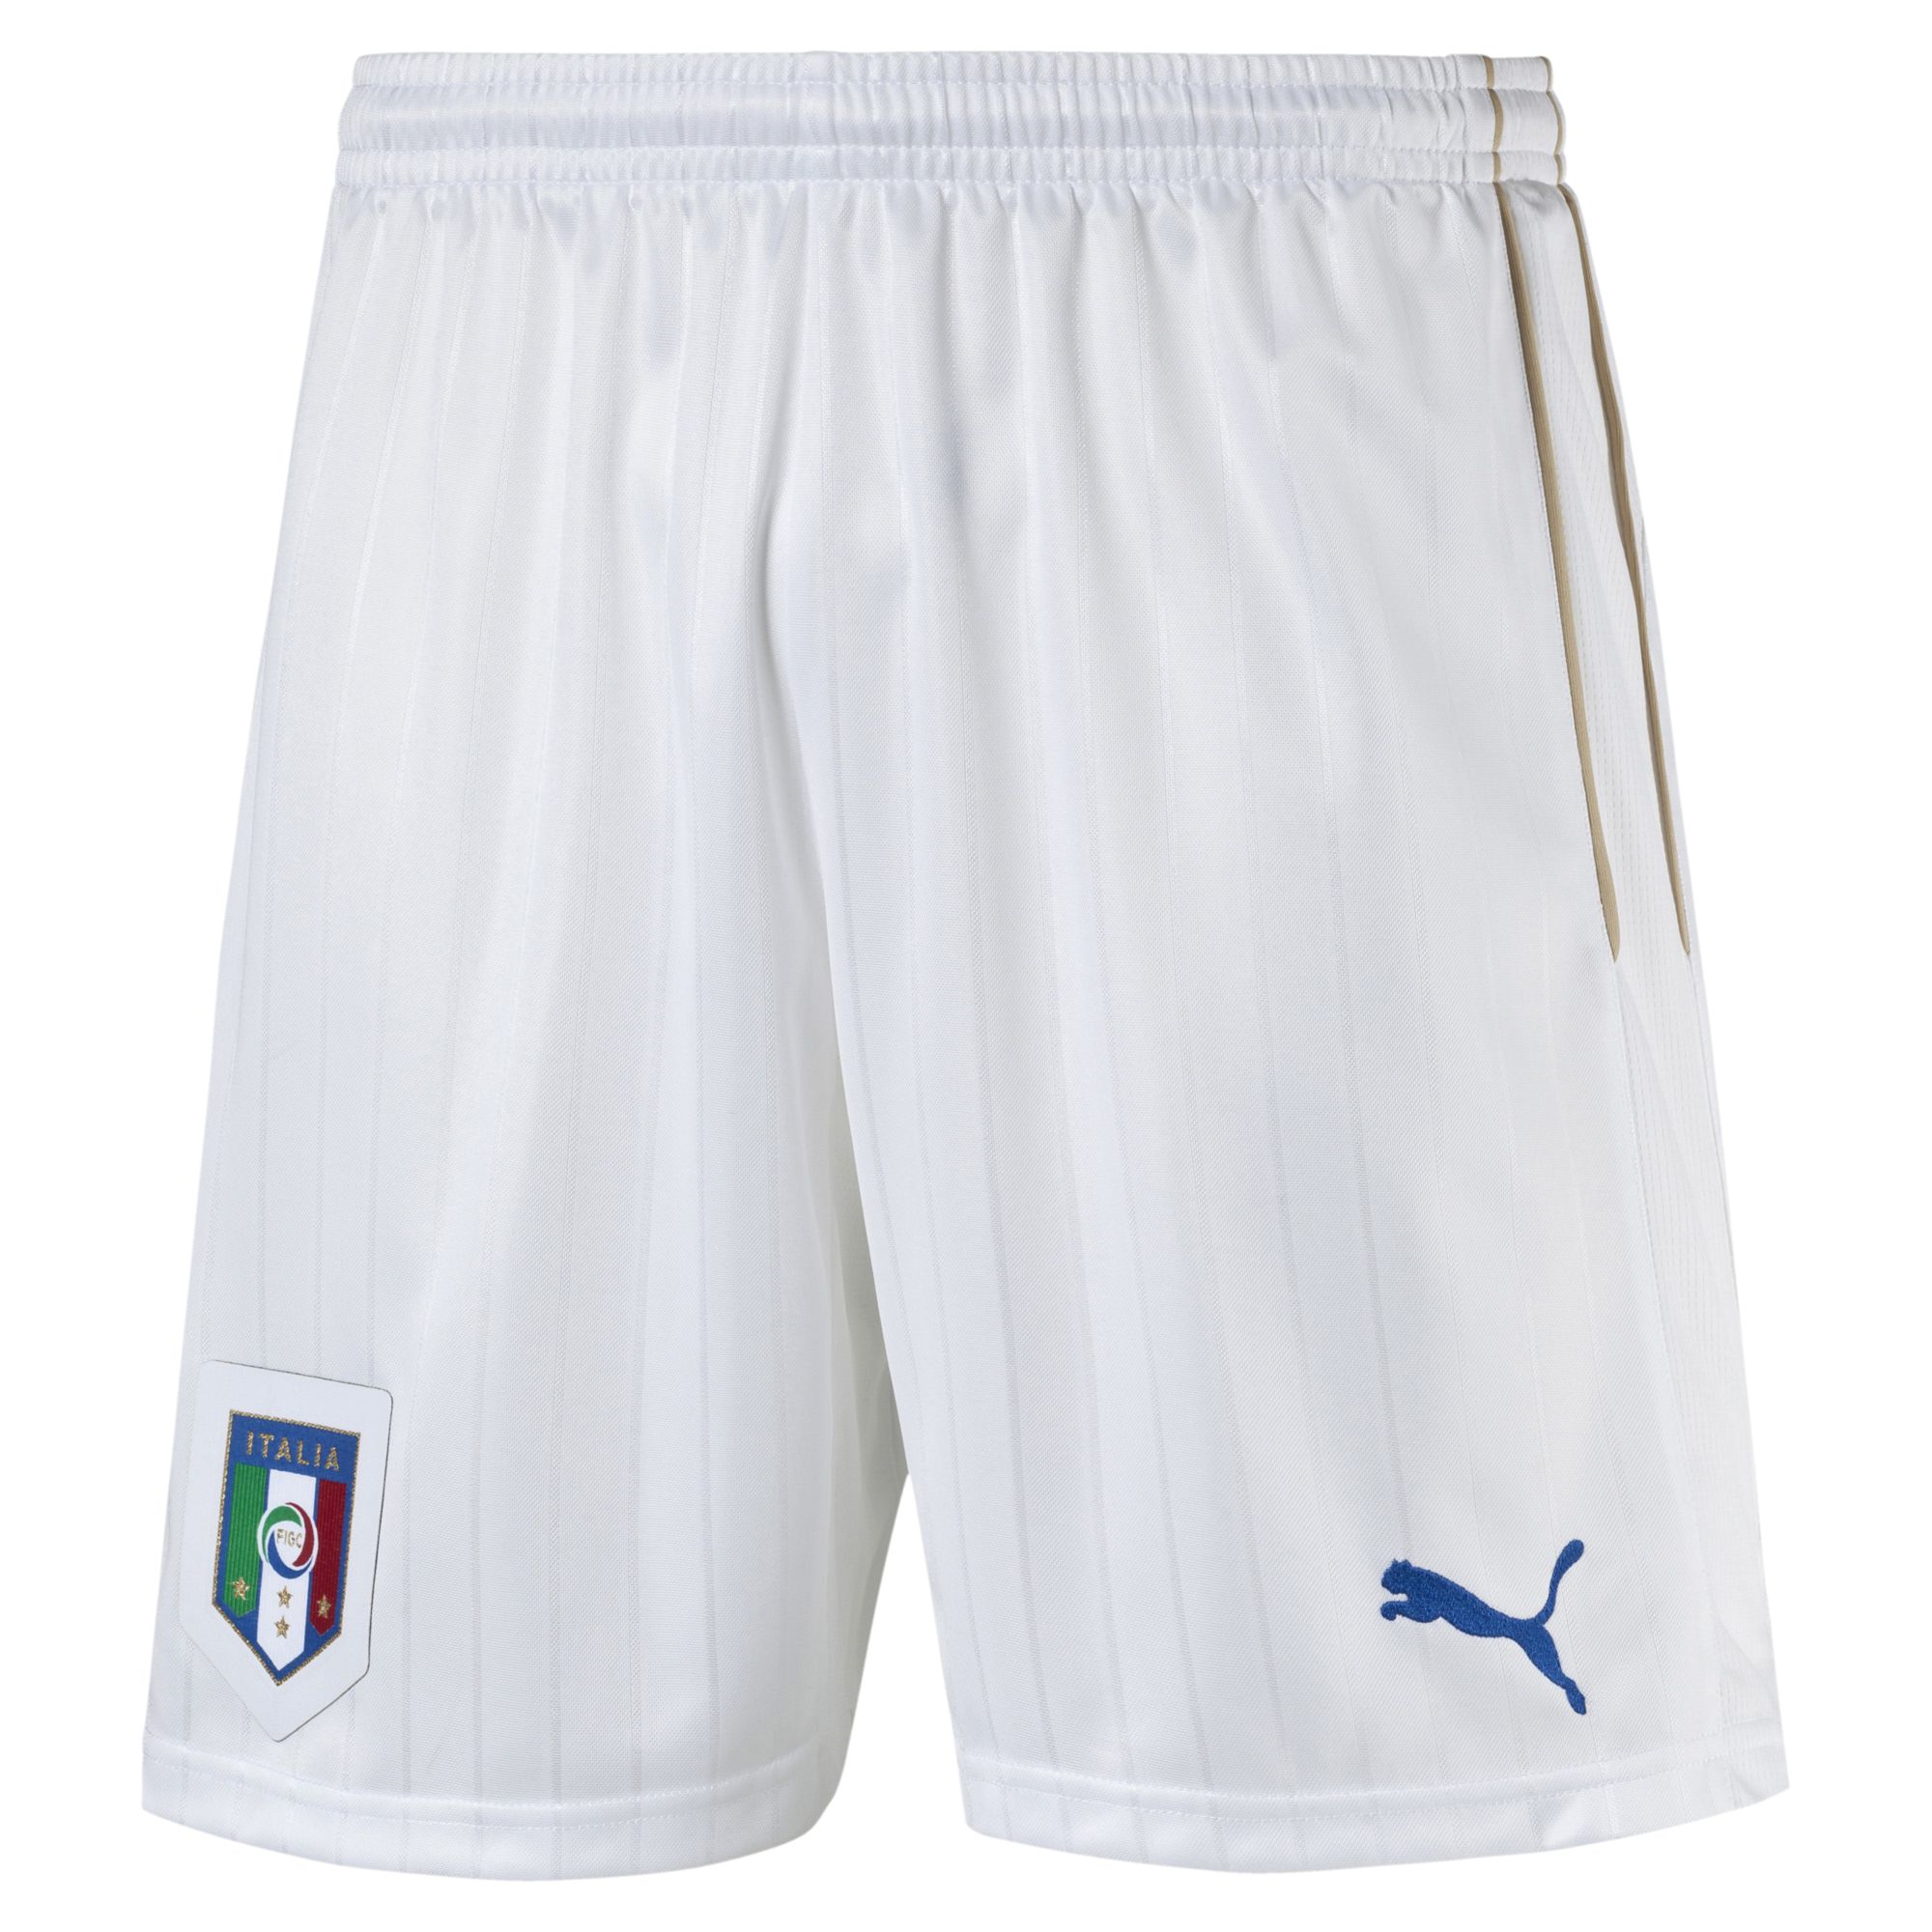 Italia Replica Shorts